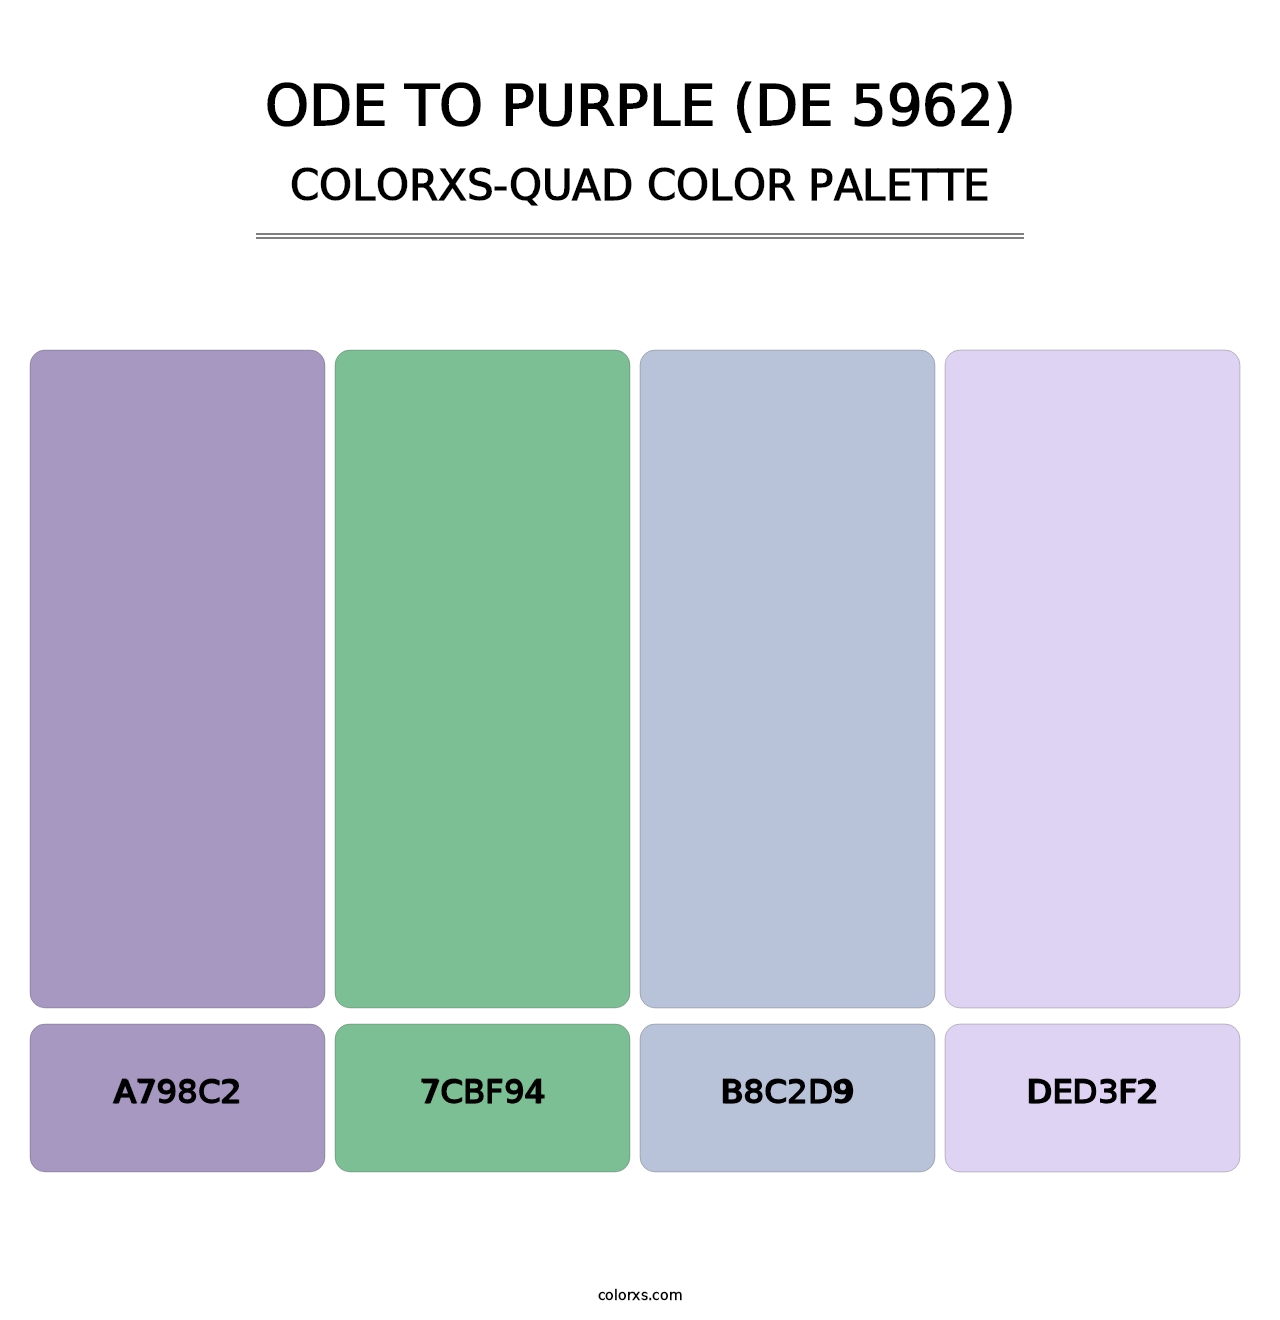 Ode to Purple (DE 5962) - Colorxs Quad Palette